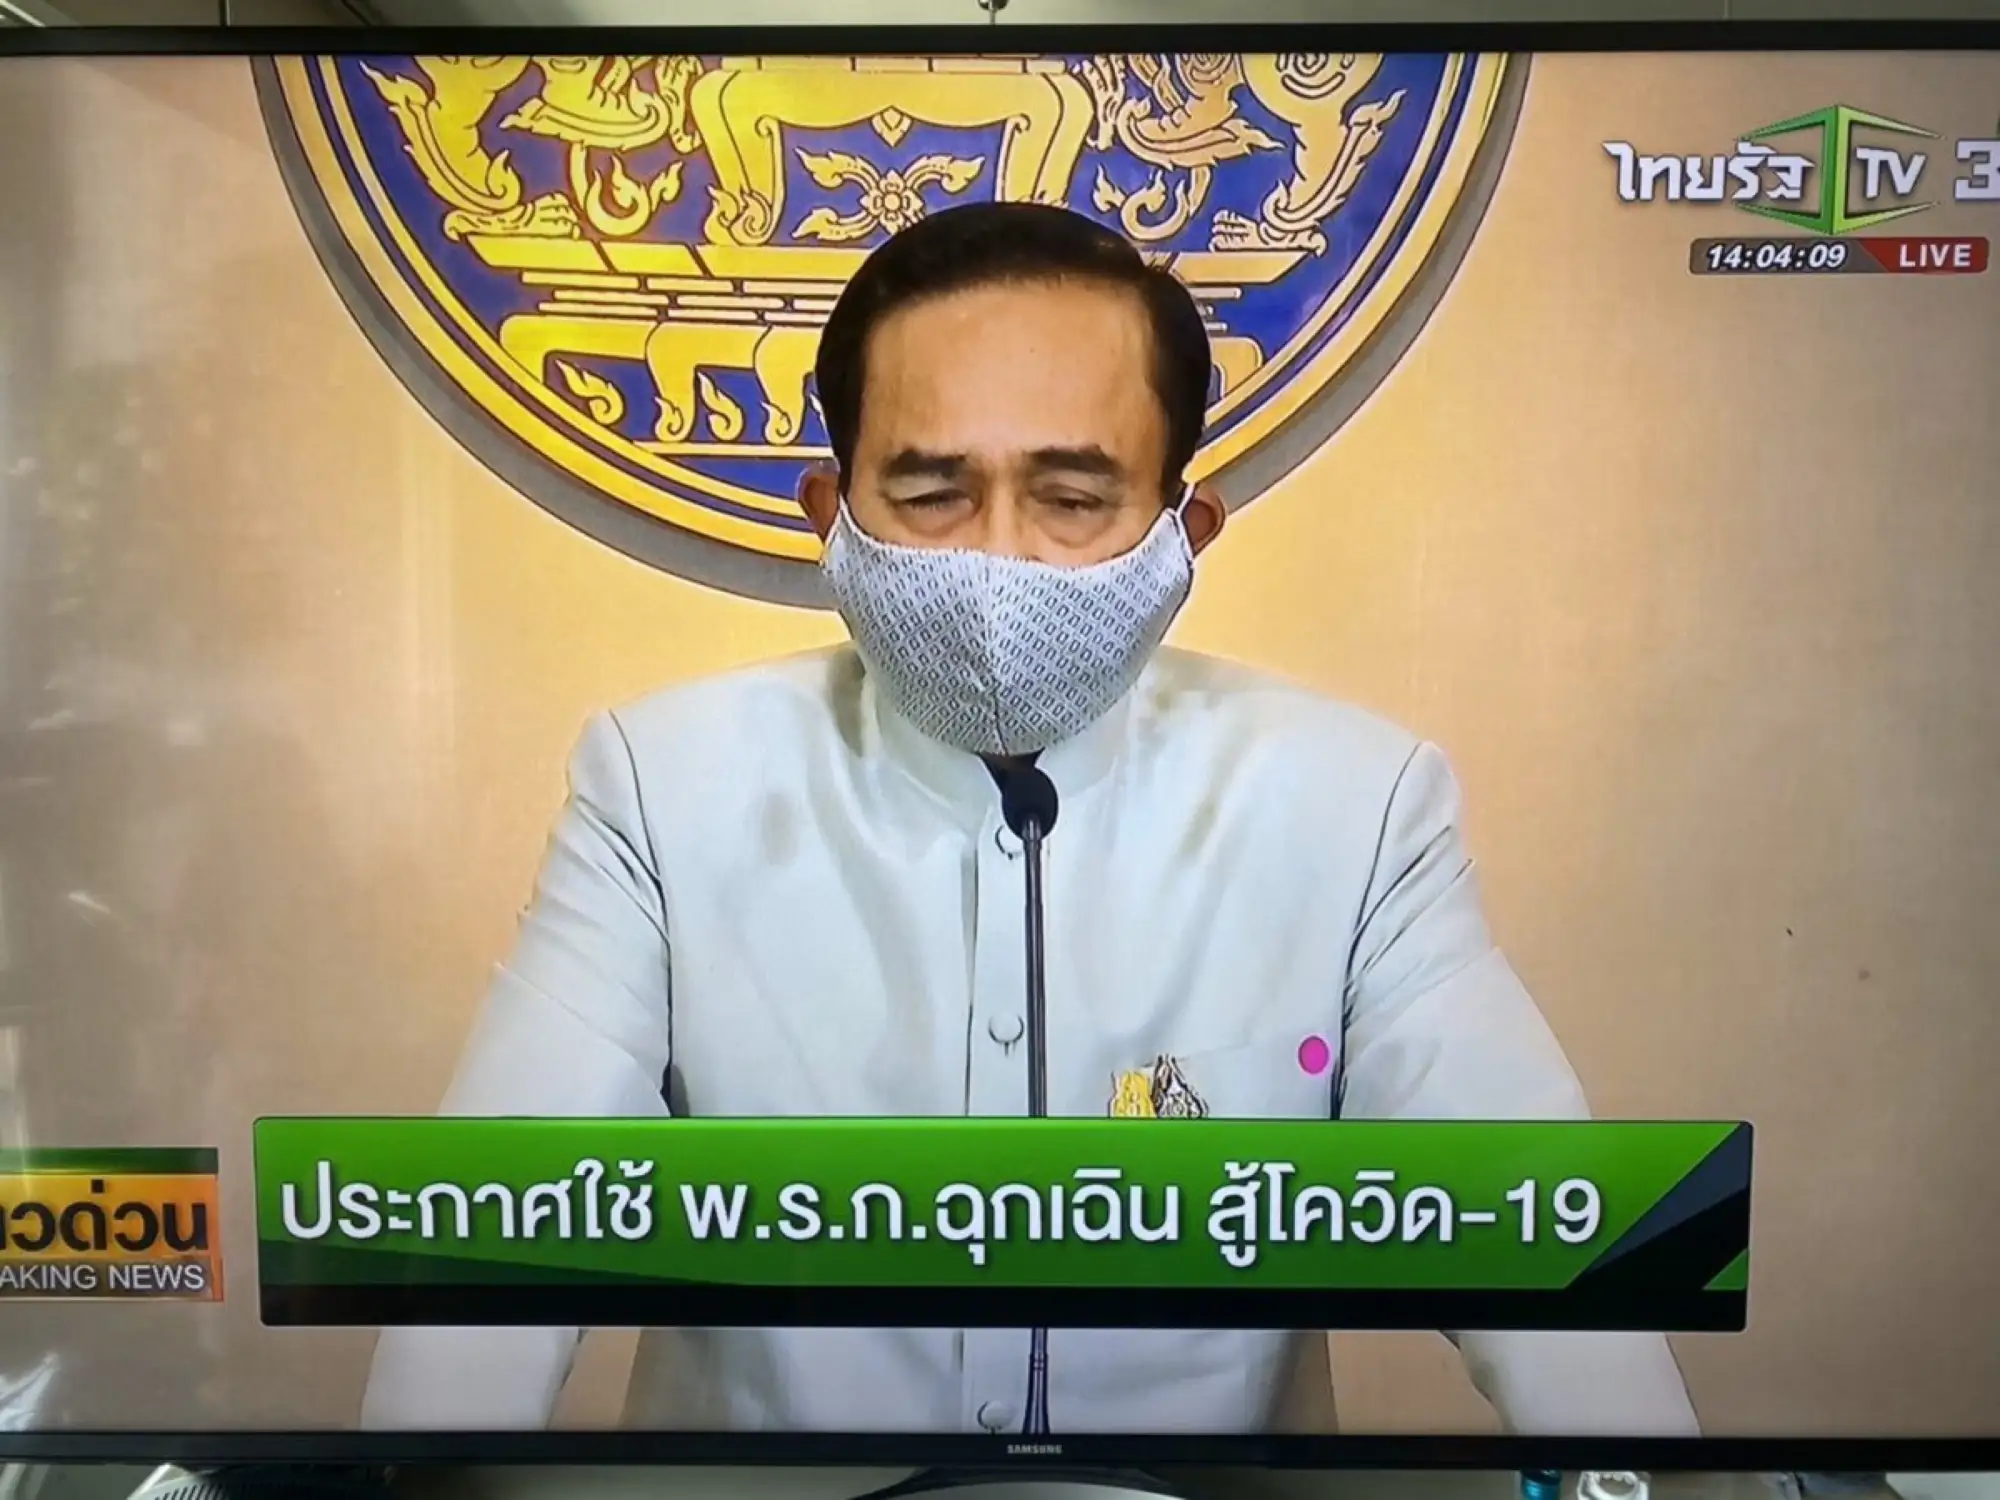 新冠肺炎蔓延 泰国总理巴育宣布本周四泰国进入国家紧急状态